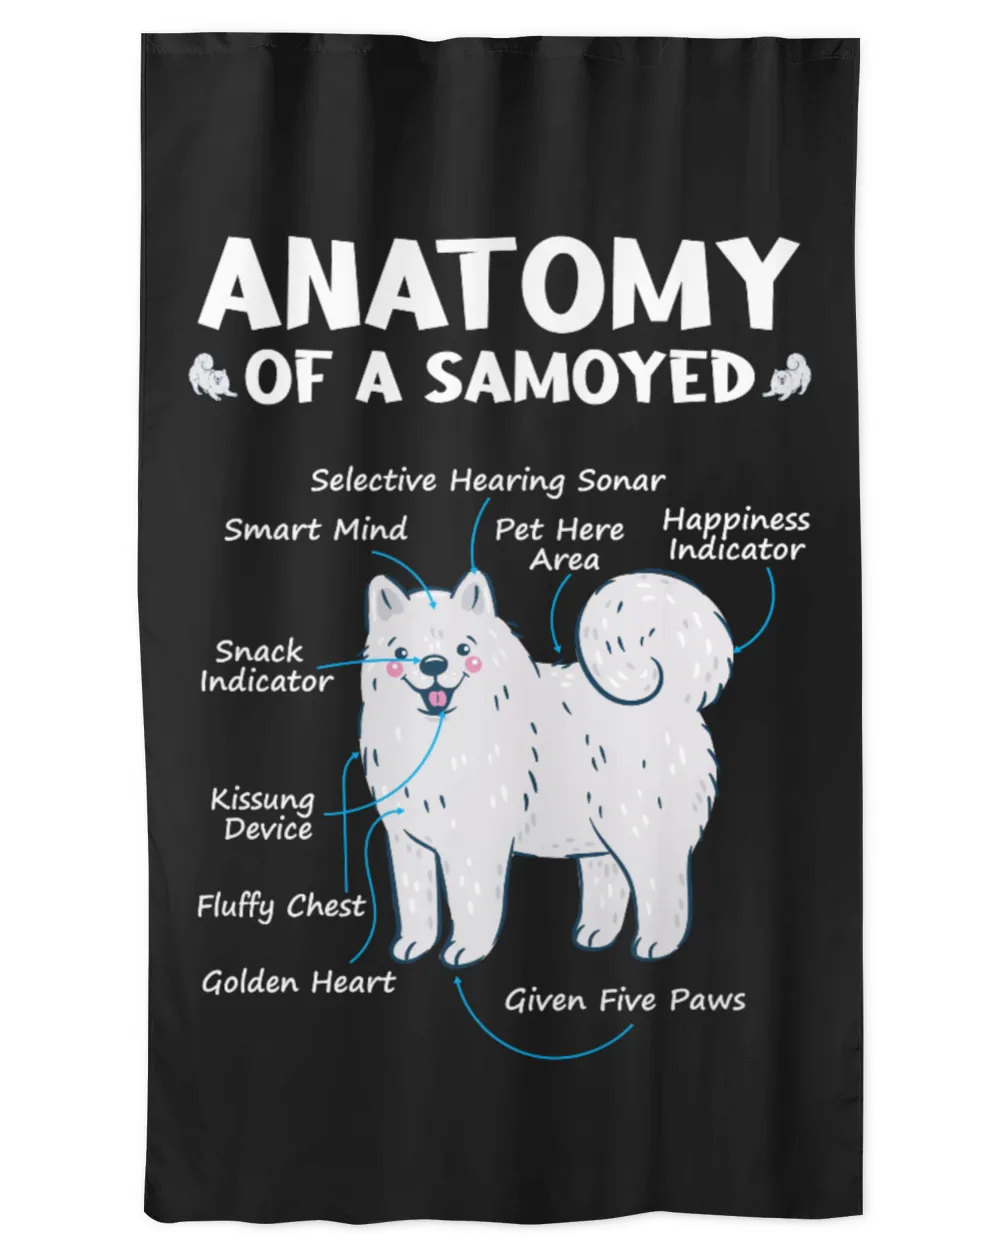 Anatomy of a Samoyed